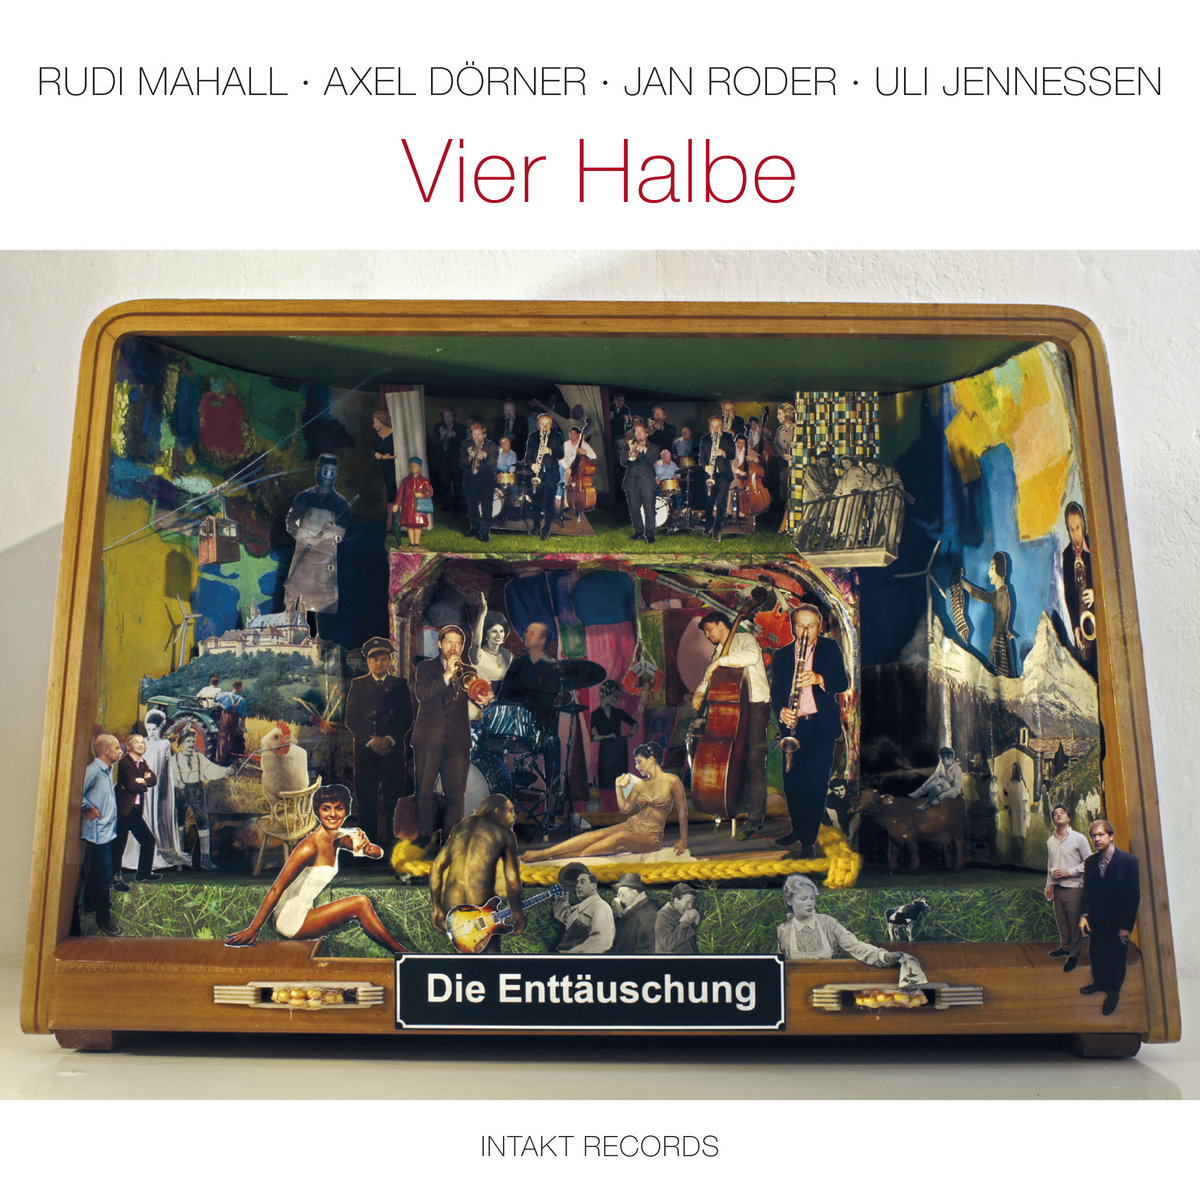 Vier Halbe
by DIE ENTTÄUSCHUNG with Rudi Mahall, Axel Dörner, Jan Roder, Uli Jennessen